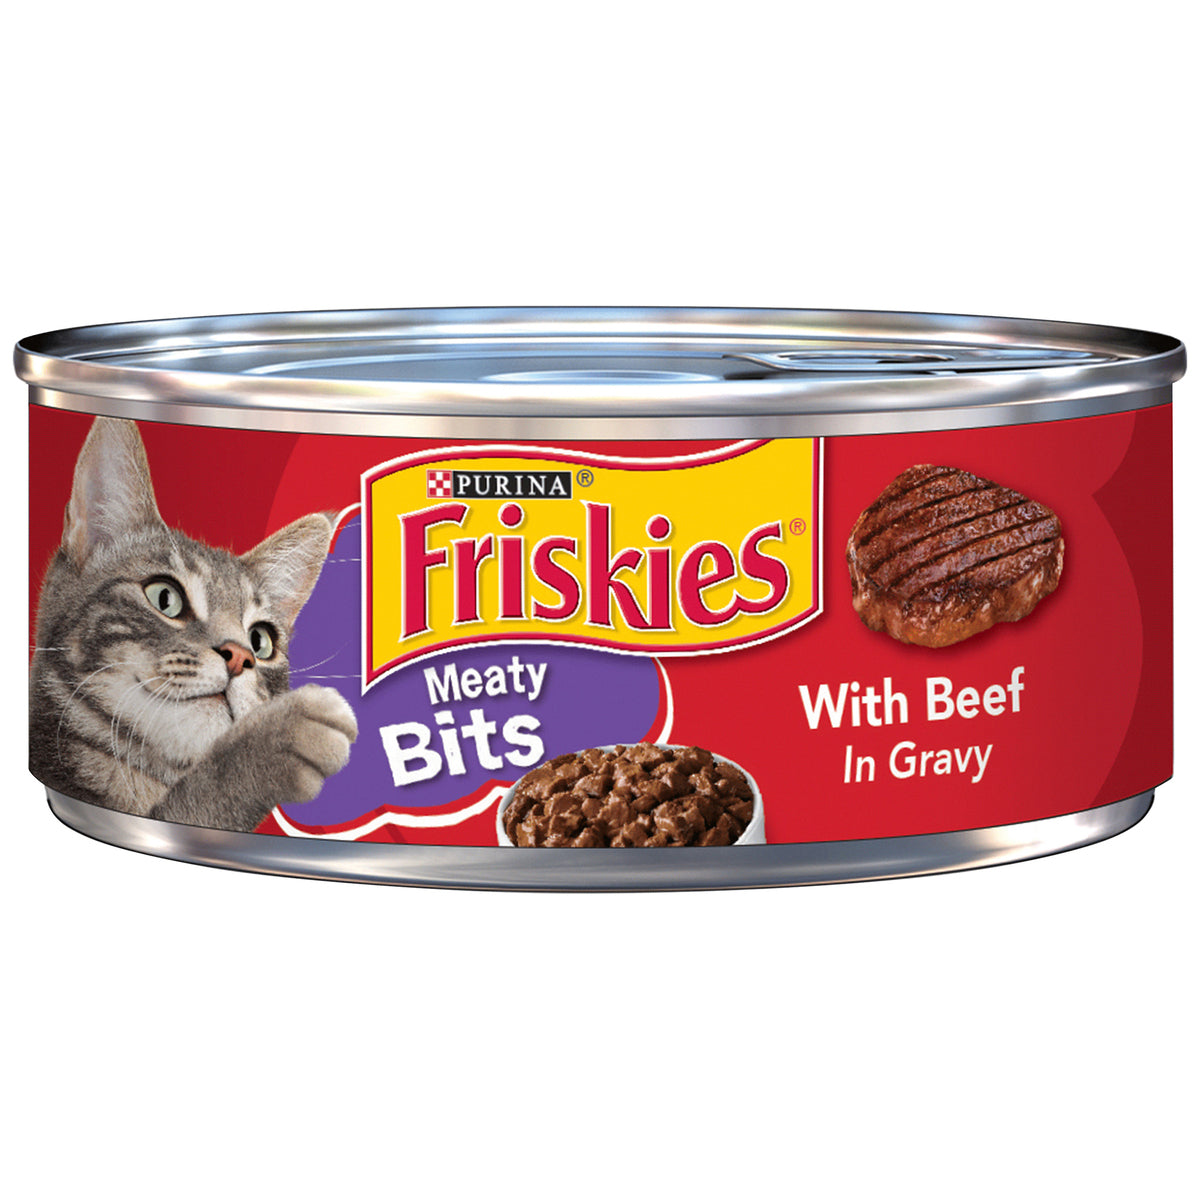 Cat, Friskies, Purina, Wet Food